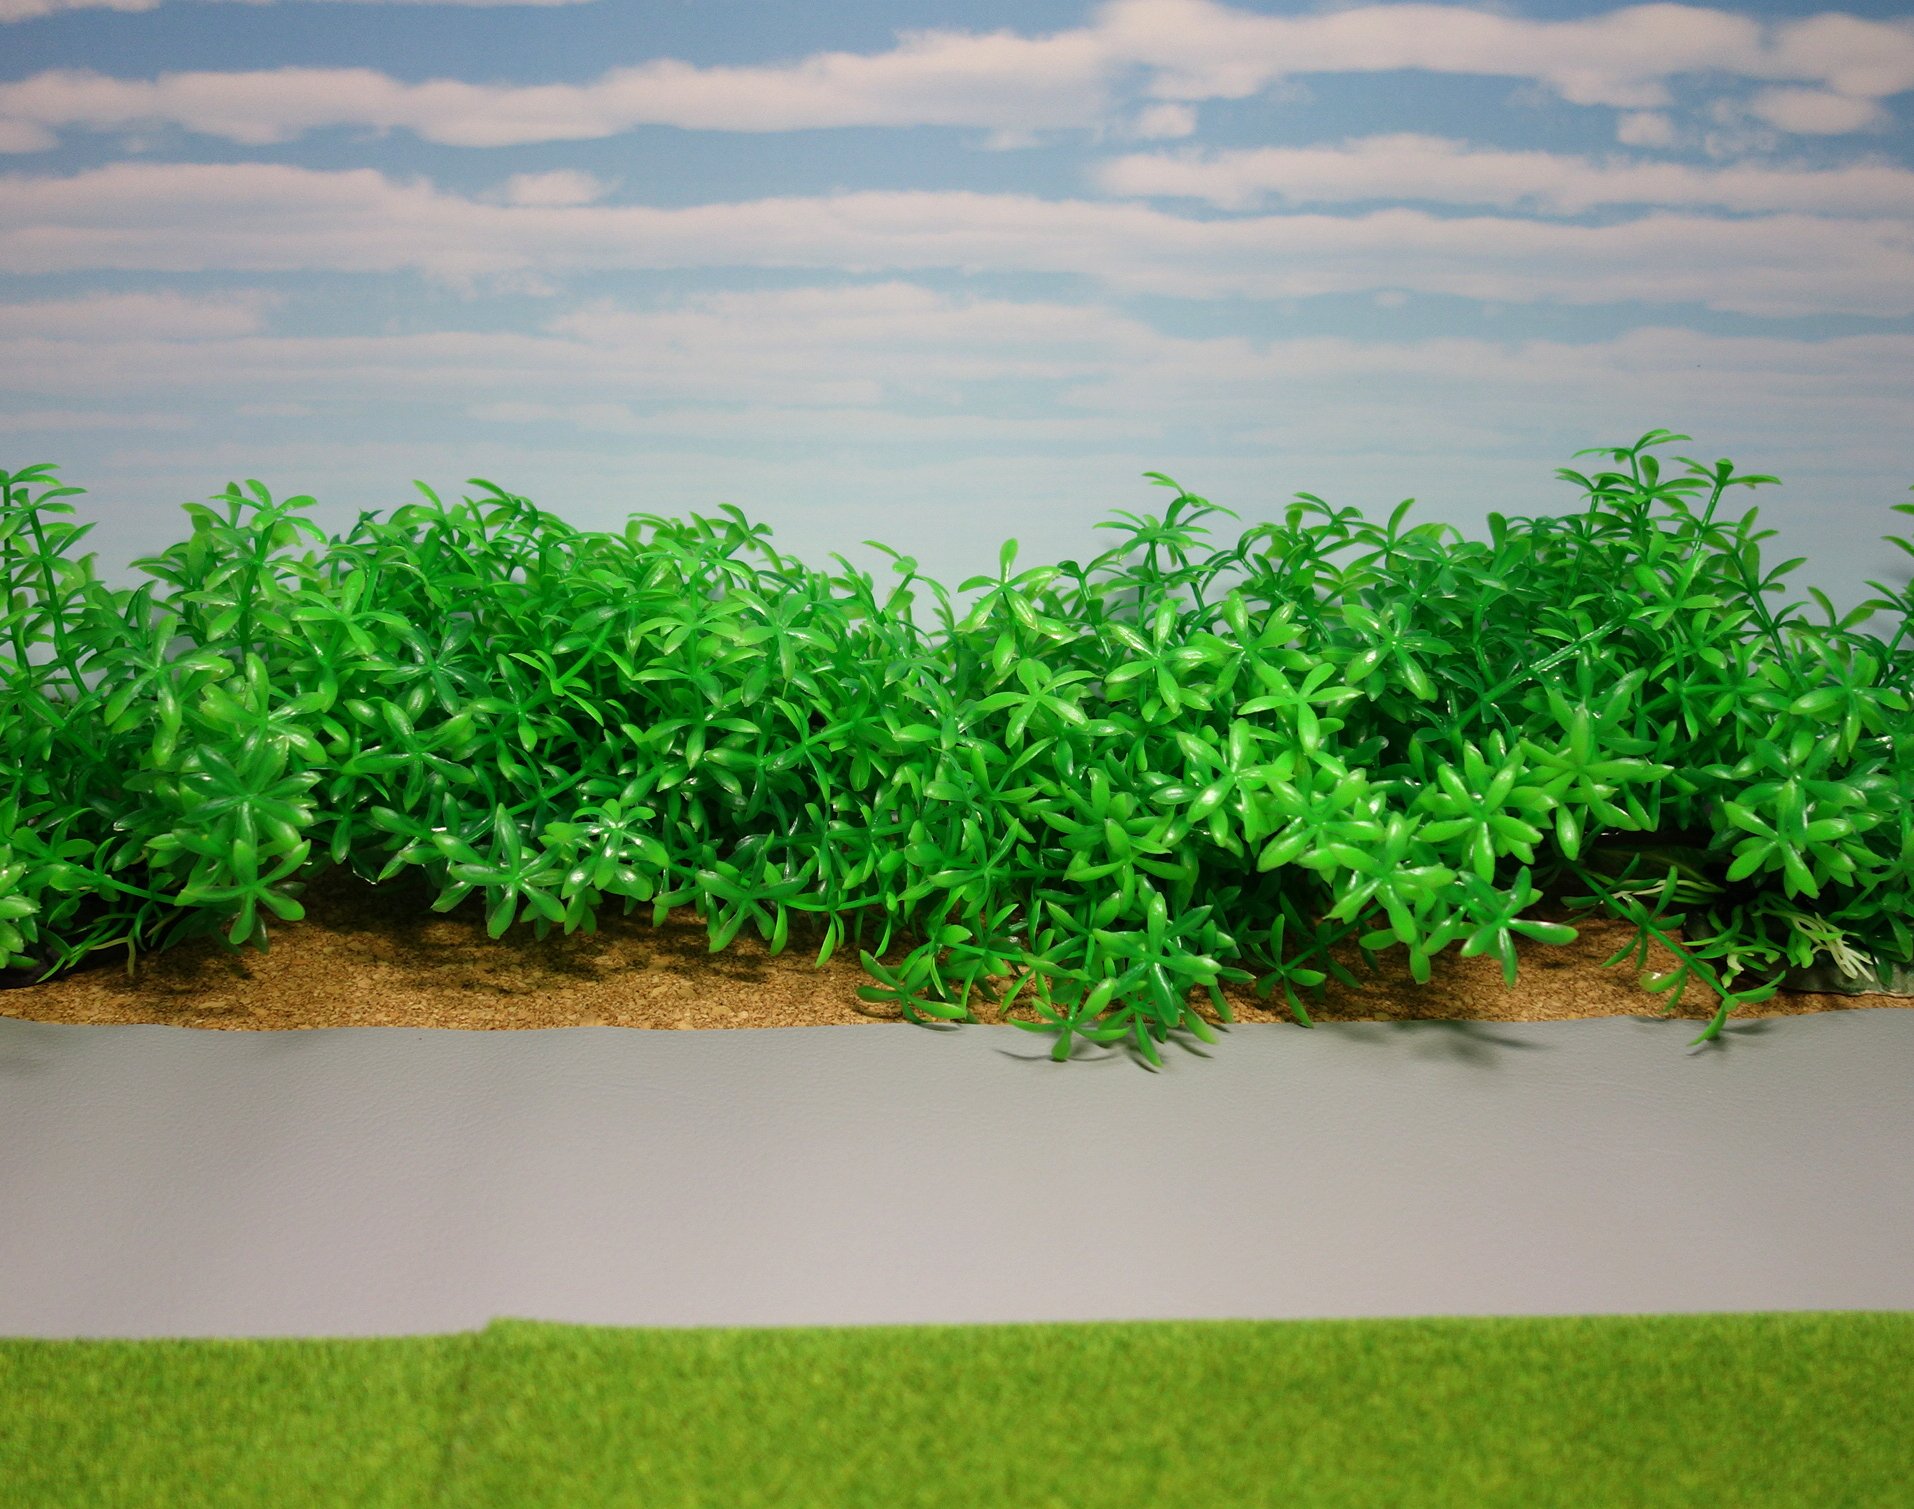 ポゥ尼崎 ｱｾﾝｼｮﾝ ﾏﾀﾞｧ っ 凵 ﾁﾝﾁﾝ 草は人工水草が丁度いいね アマゾンで注文した テトラ フレキシブルプラント を２つ置いてみた 100均でも人工水草があるので利用できる ちなみに土の地面は100均の コルクシート フィギュア簡